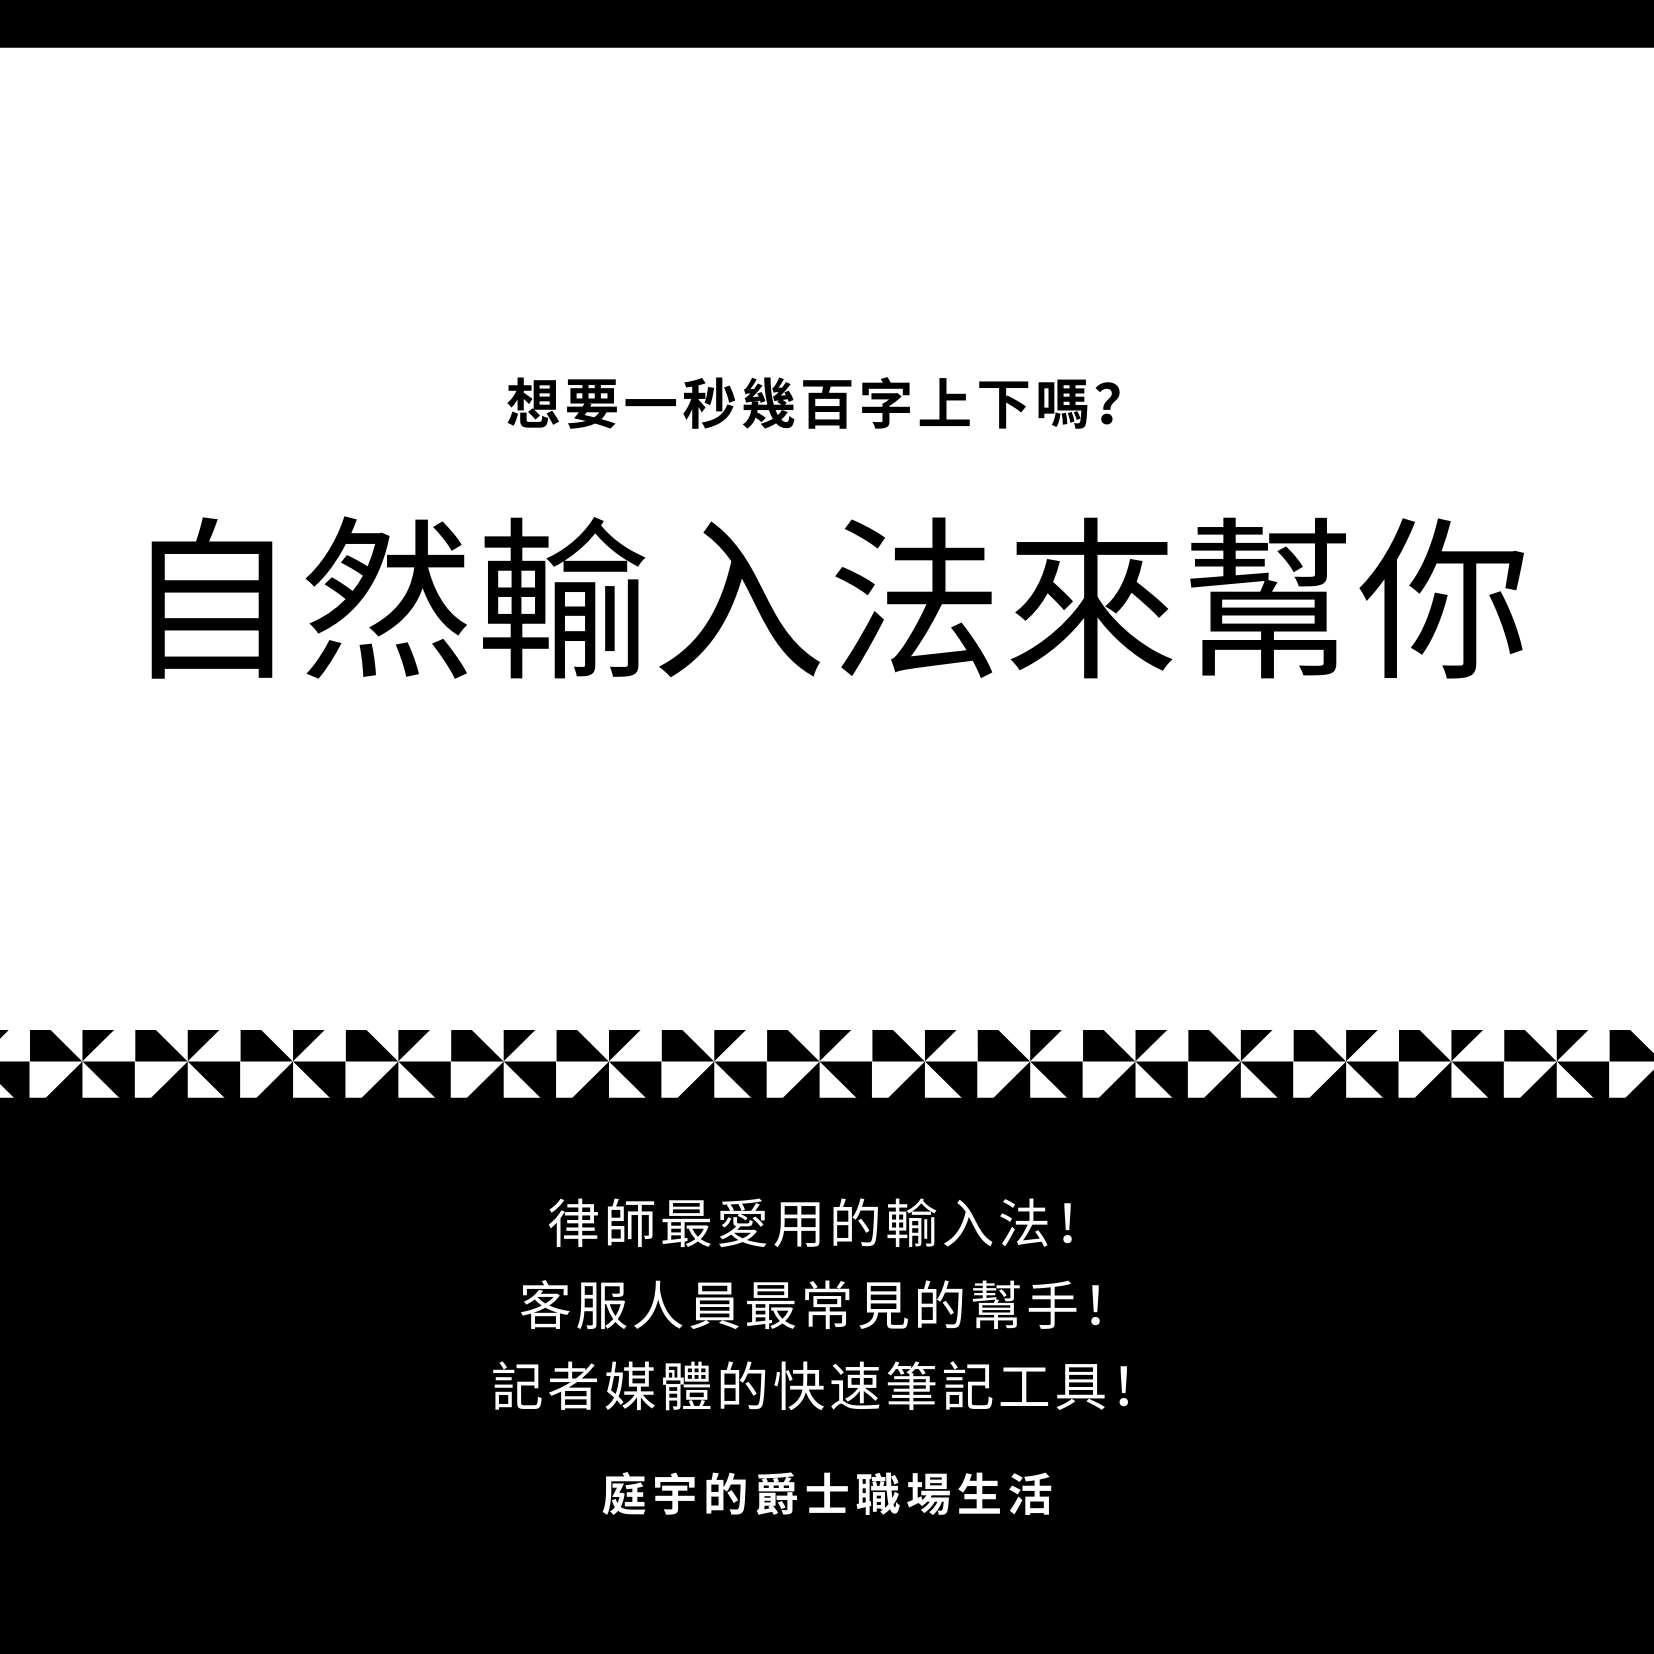 中文輸入法推薦：自然輸入法